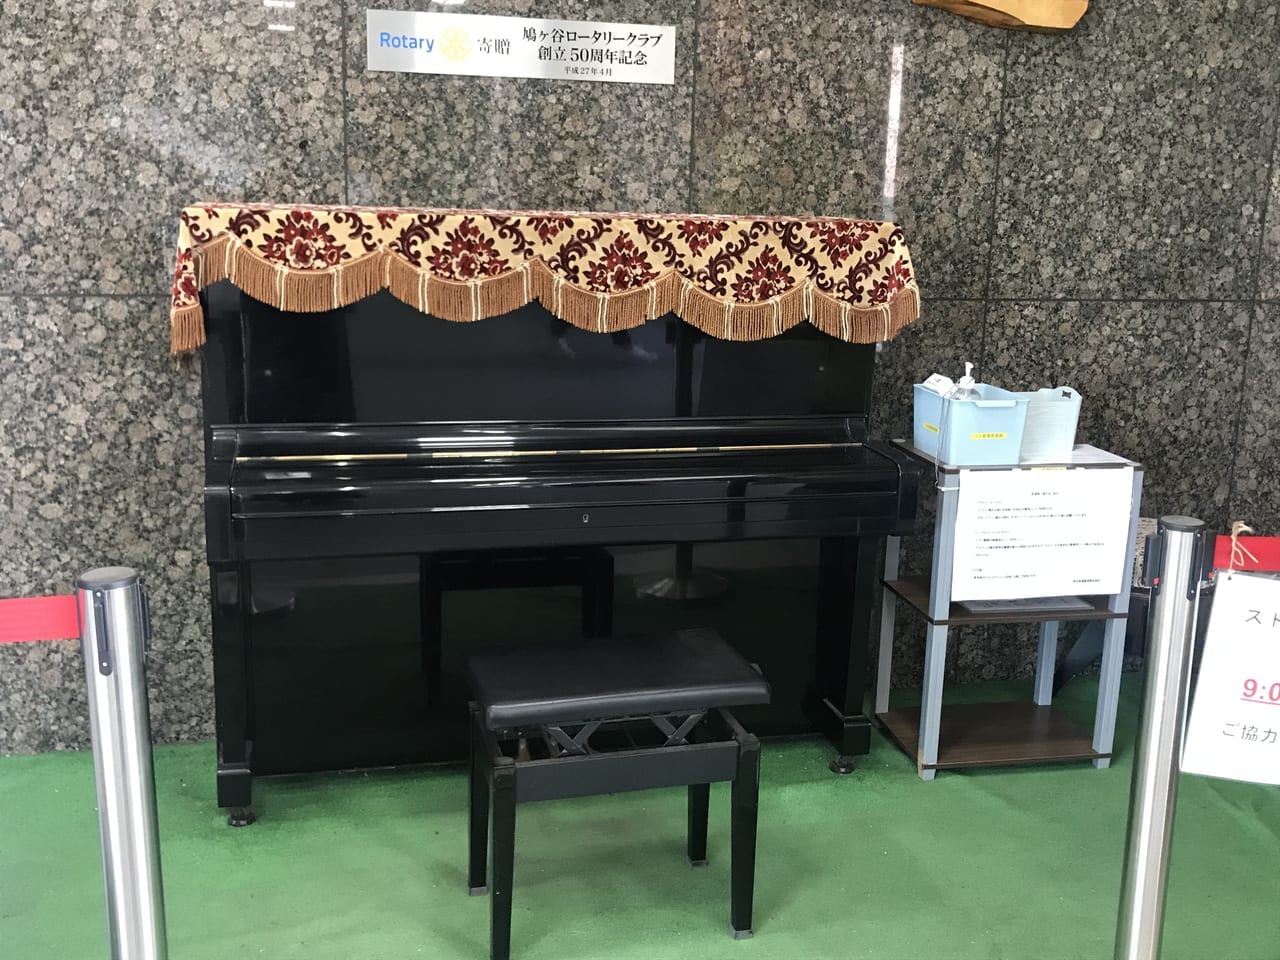 鳩ヶ谷駅ストリートピアノ